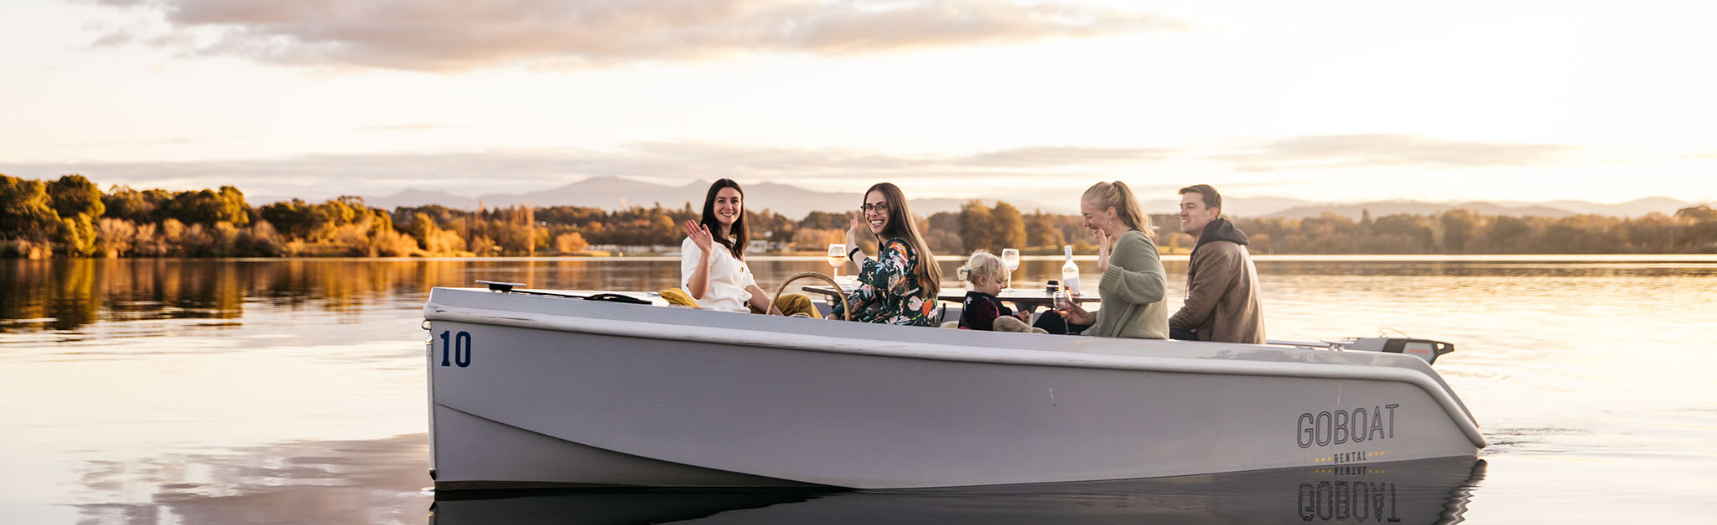 Goboat Canberra